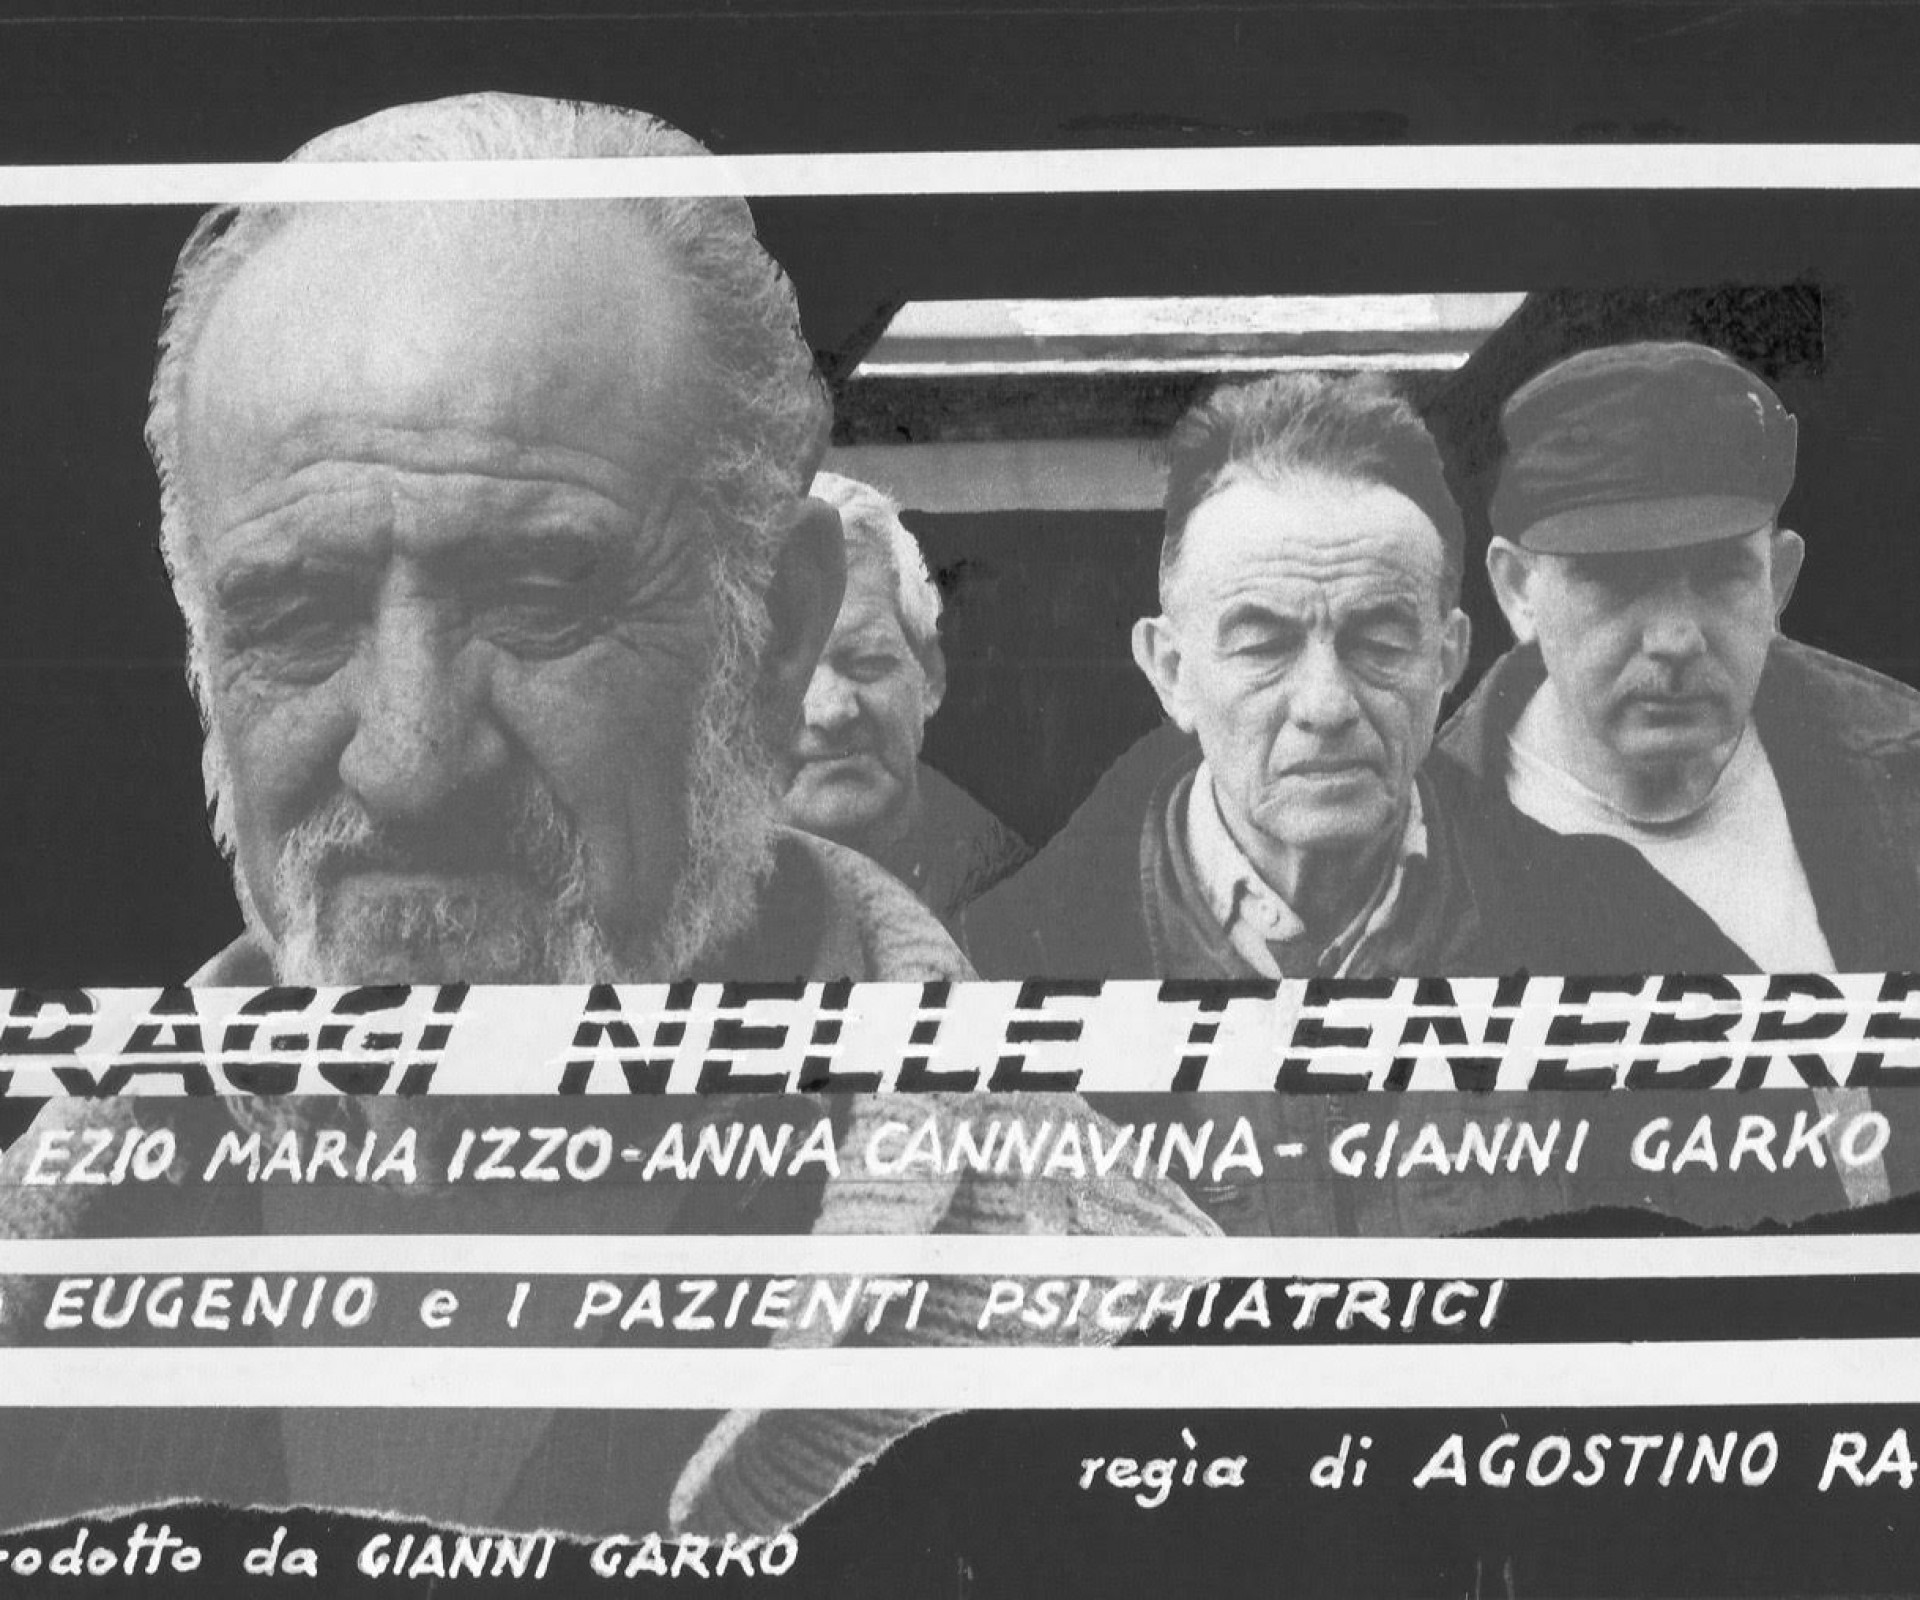 Raggi nelle tenebre - seconda tappa - ovvero come distruggere una psichiatria riabilitativa.  Docu-film in B/N, regia Agostino Raff, produzione Gianni Garko.